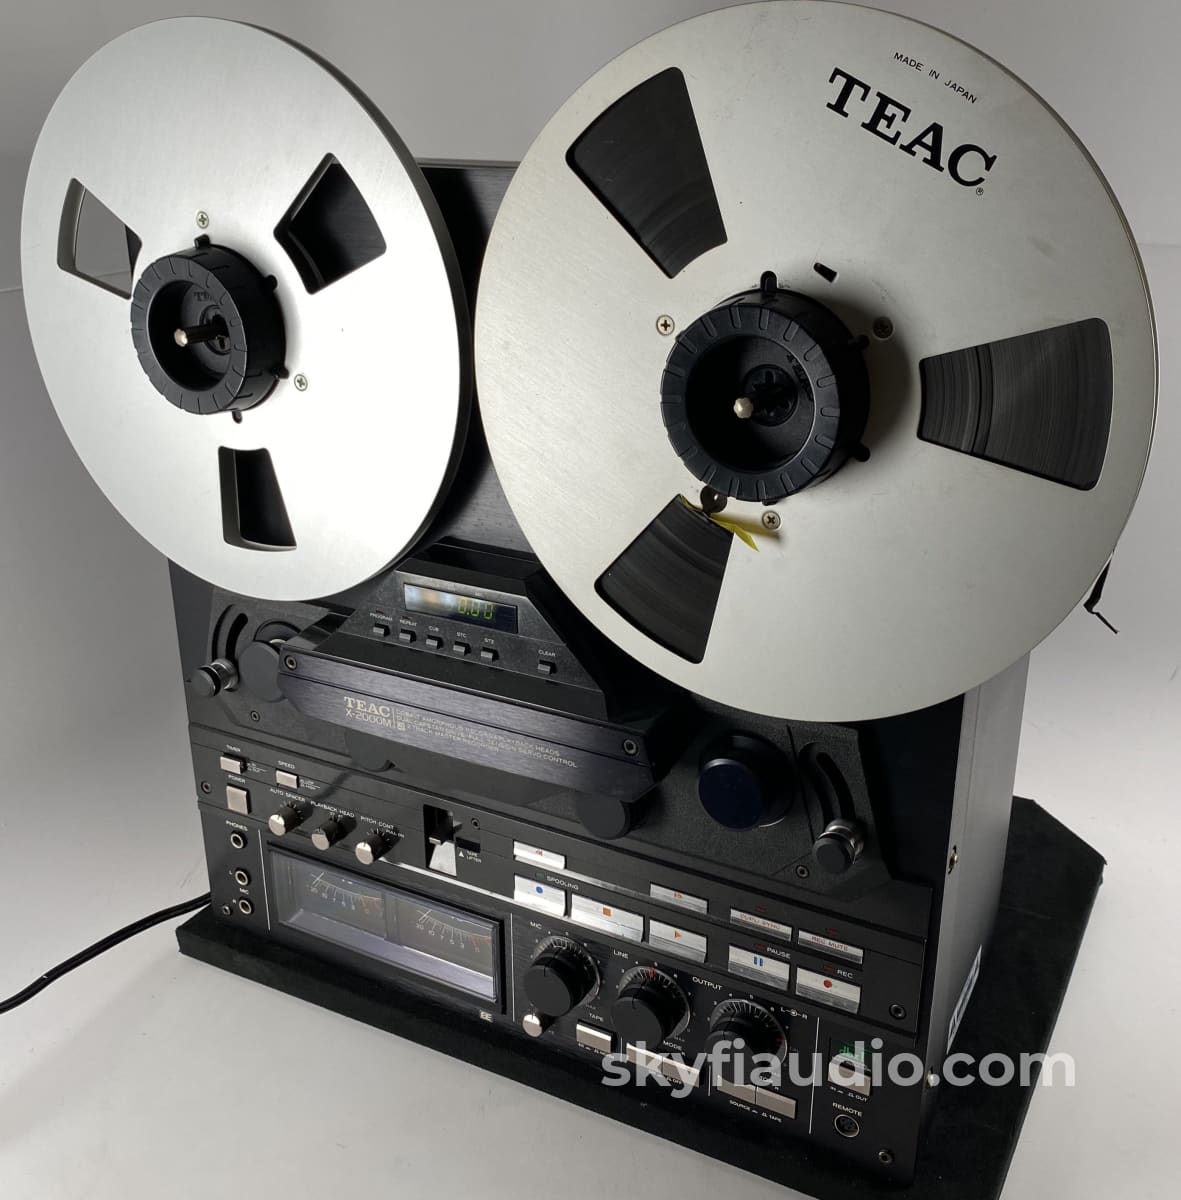 TEAC Ｘ2000M - オーディオ機器